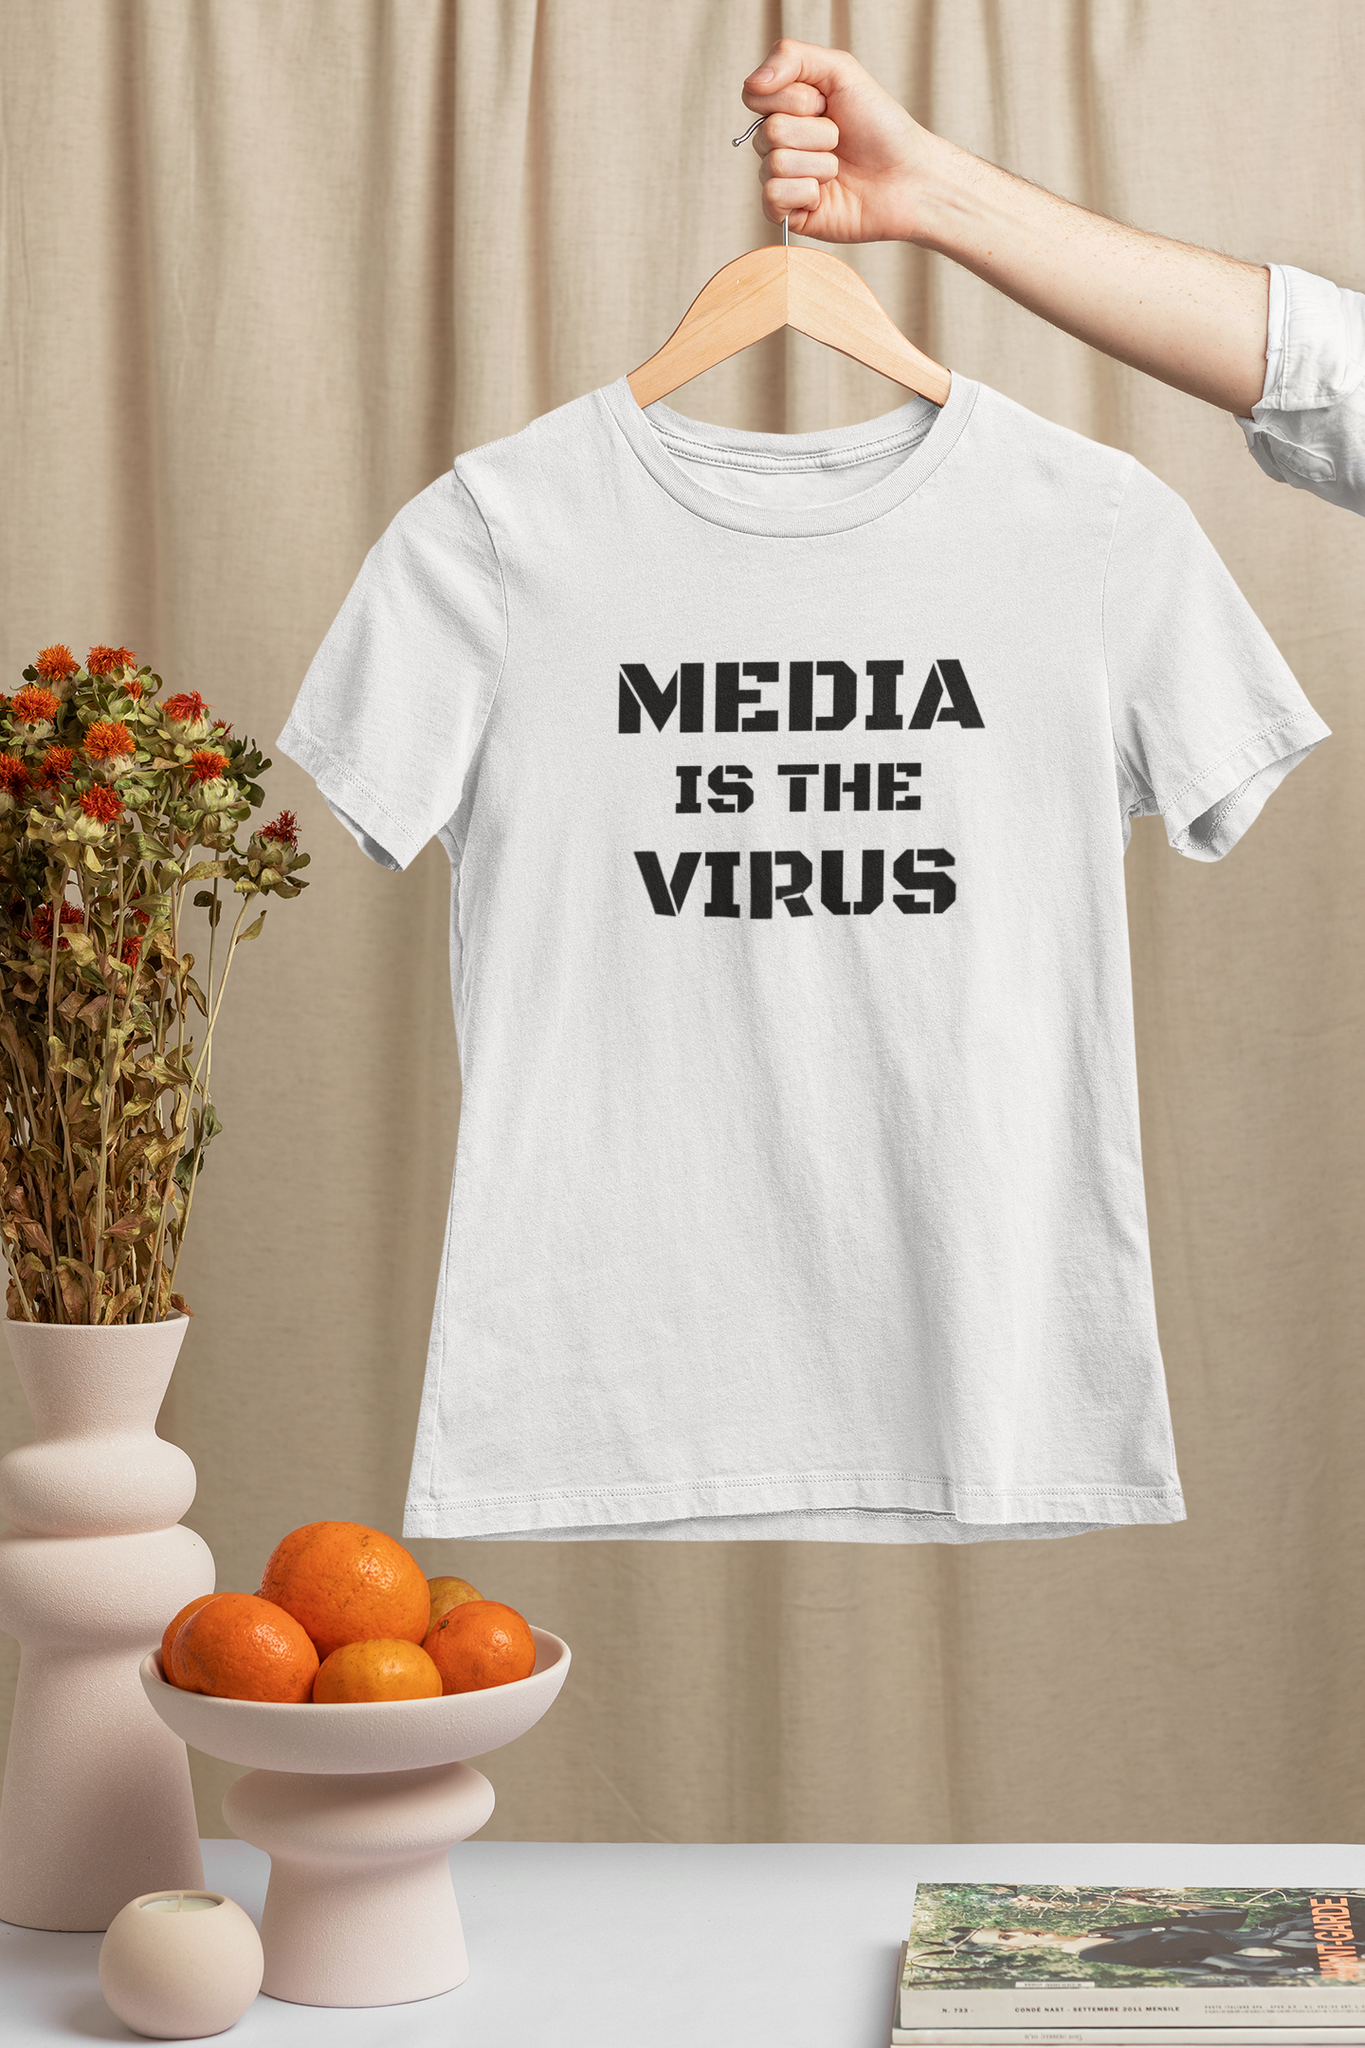 Media Is The Virus T-Shirt Women